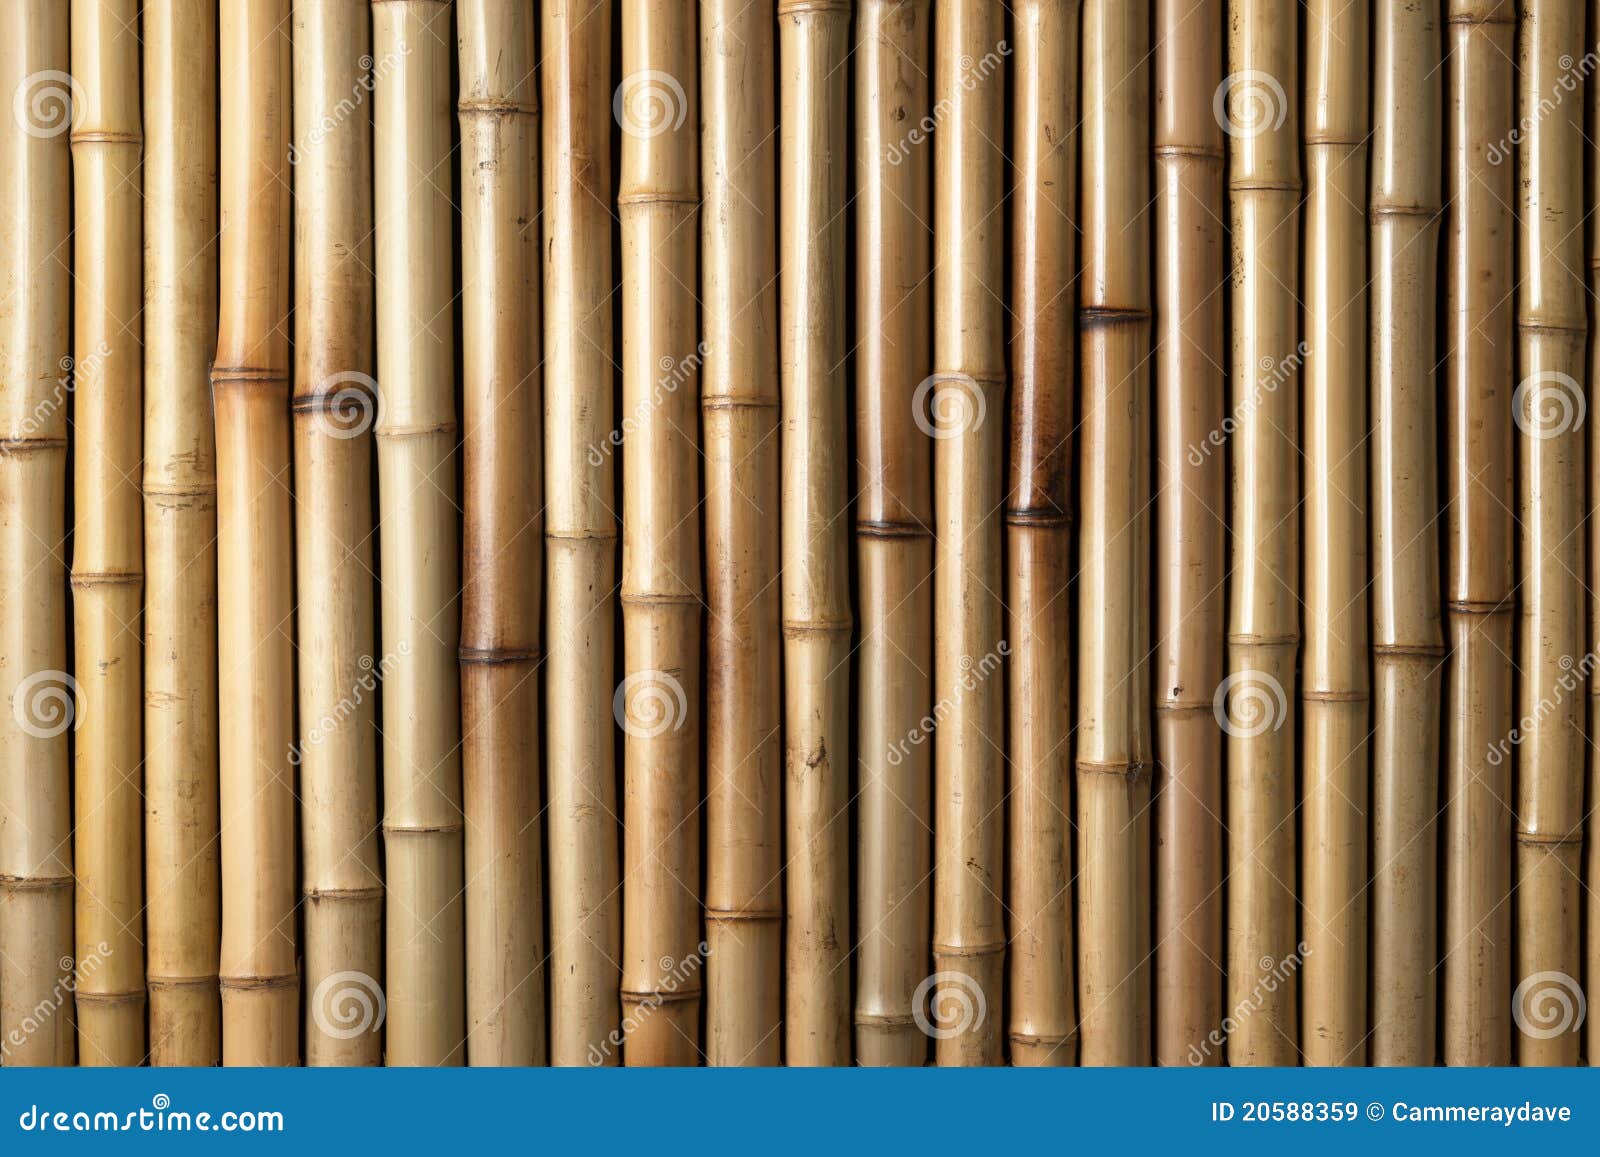 wood bamboo background